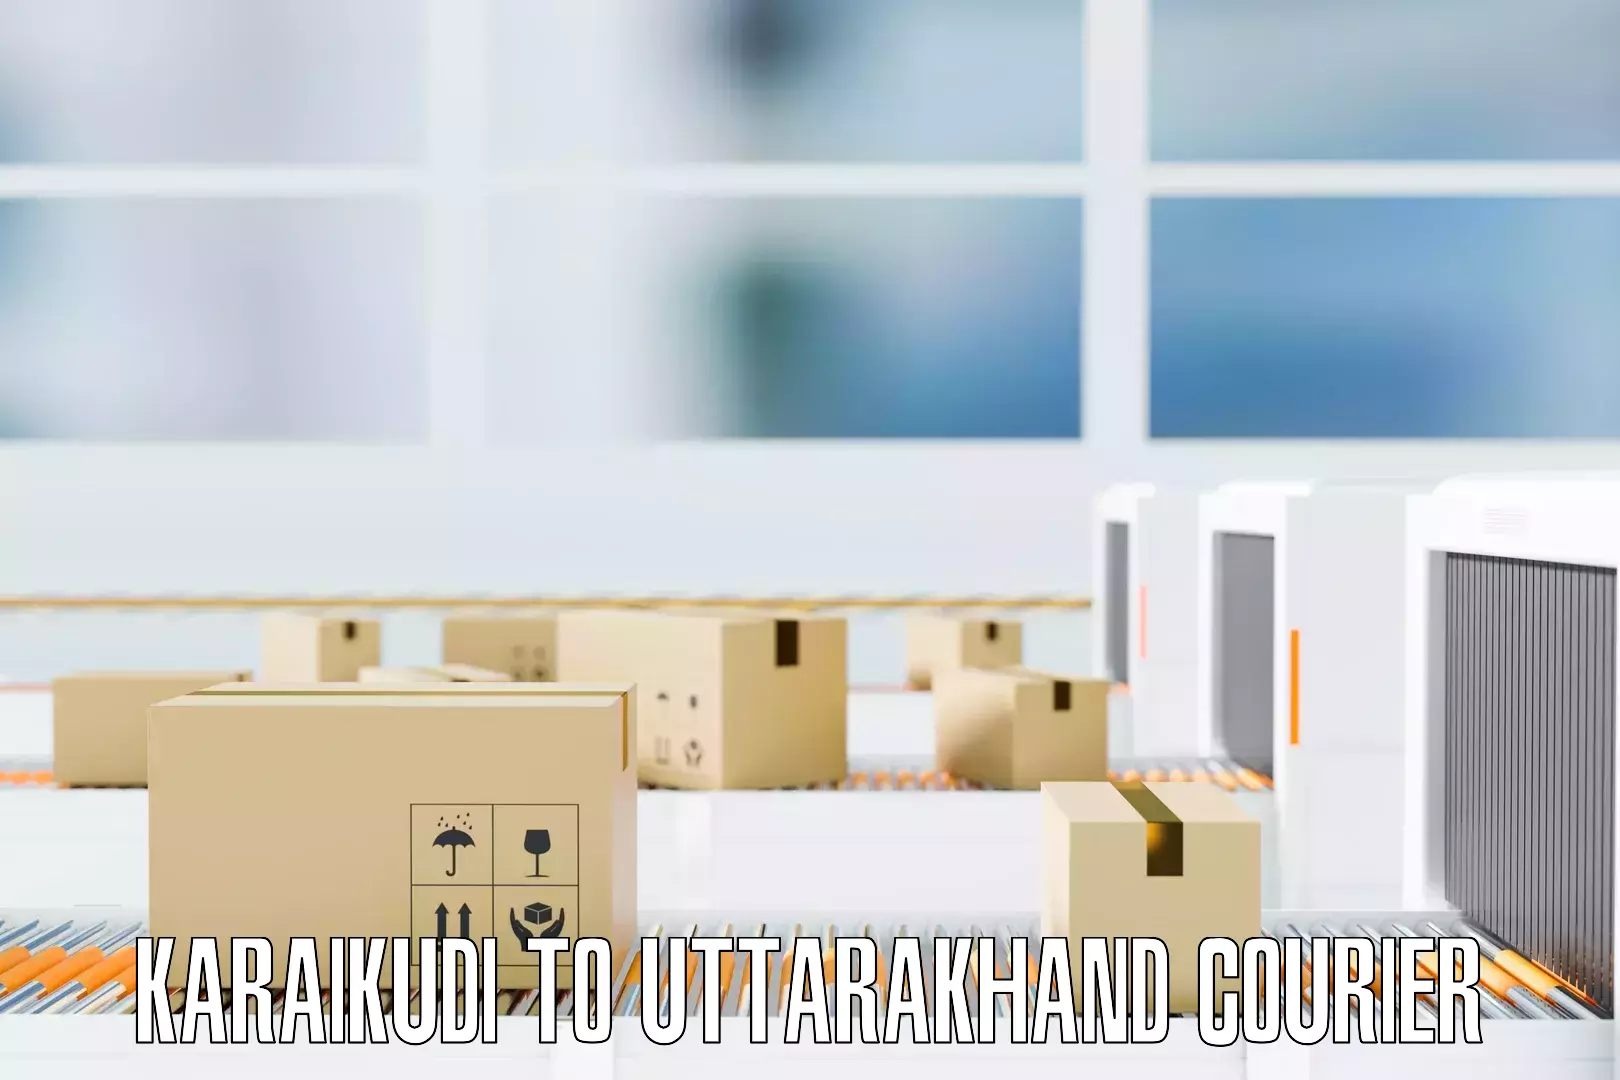 Household moving experts Karaikudi to Tanakpur